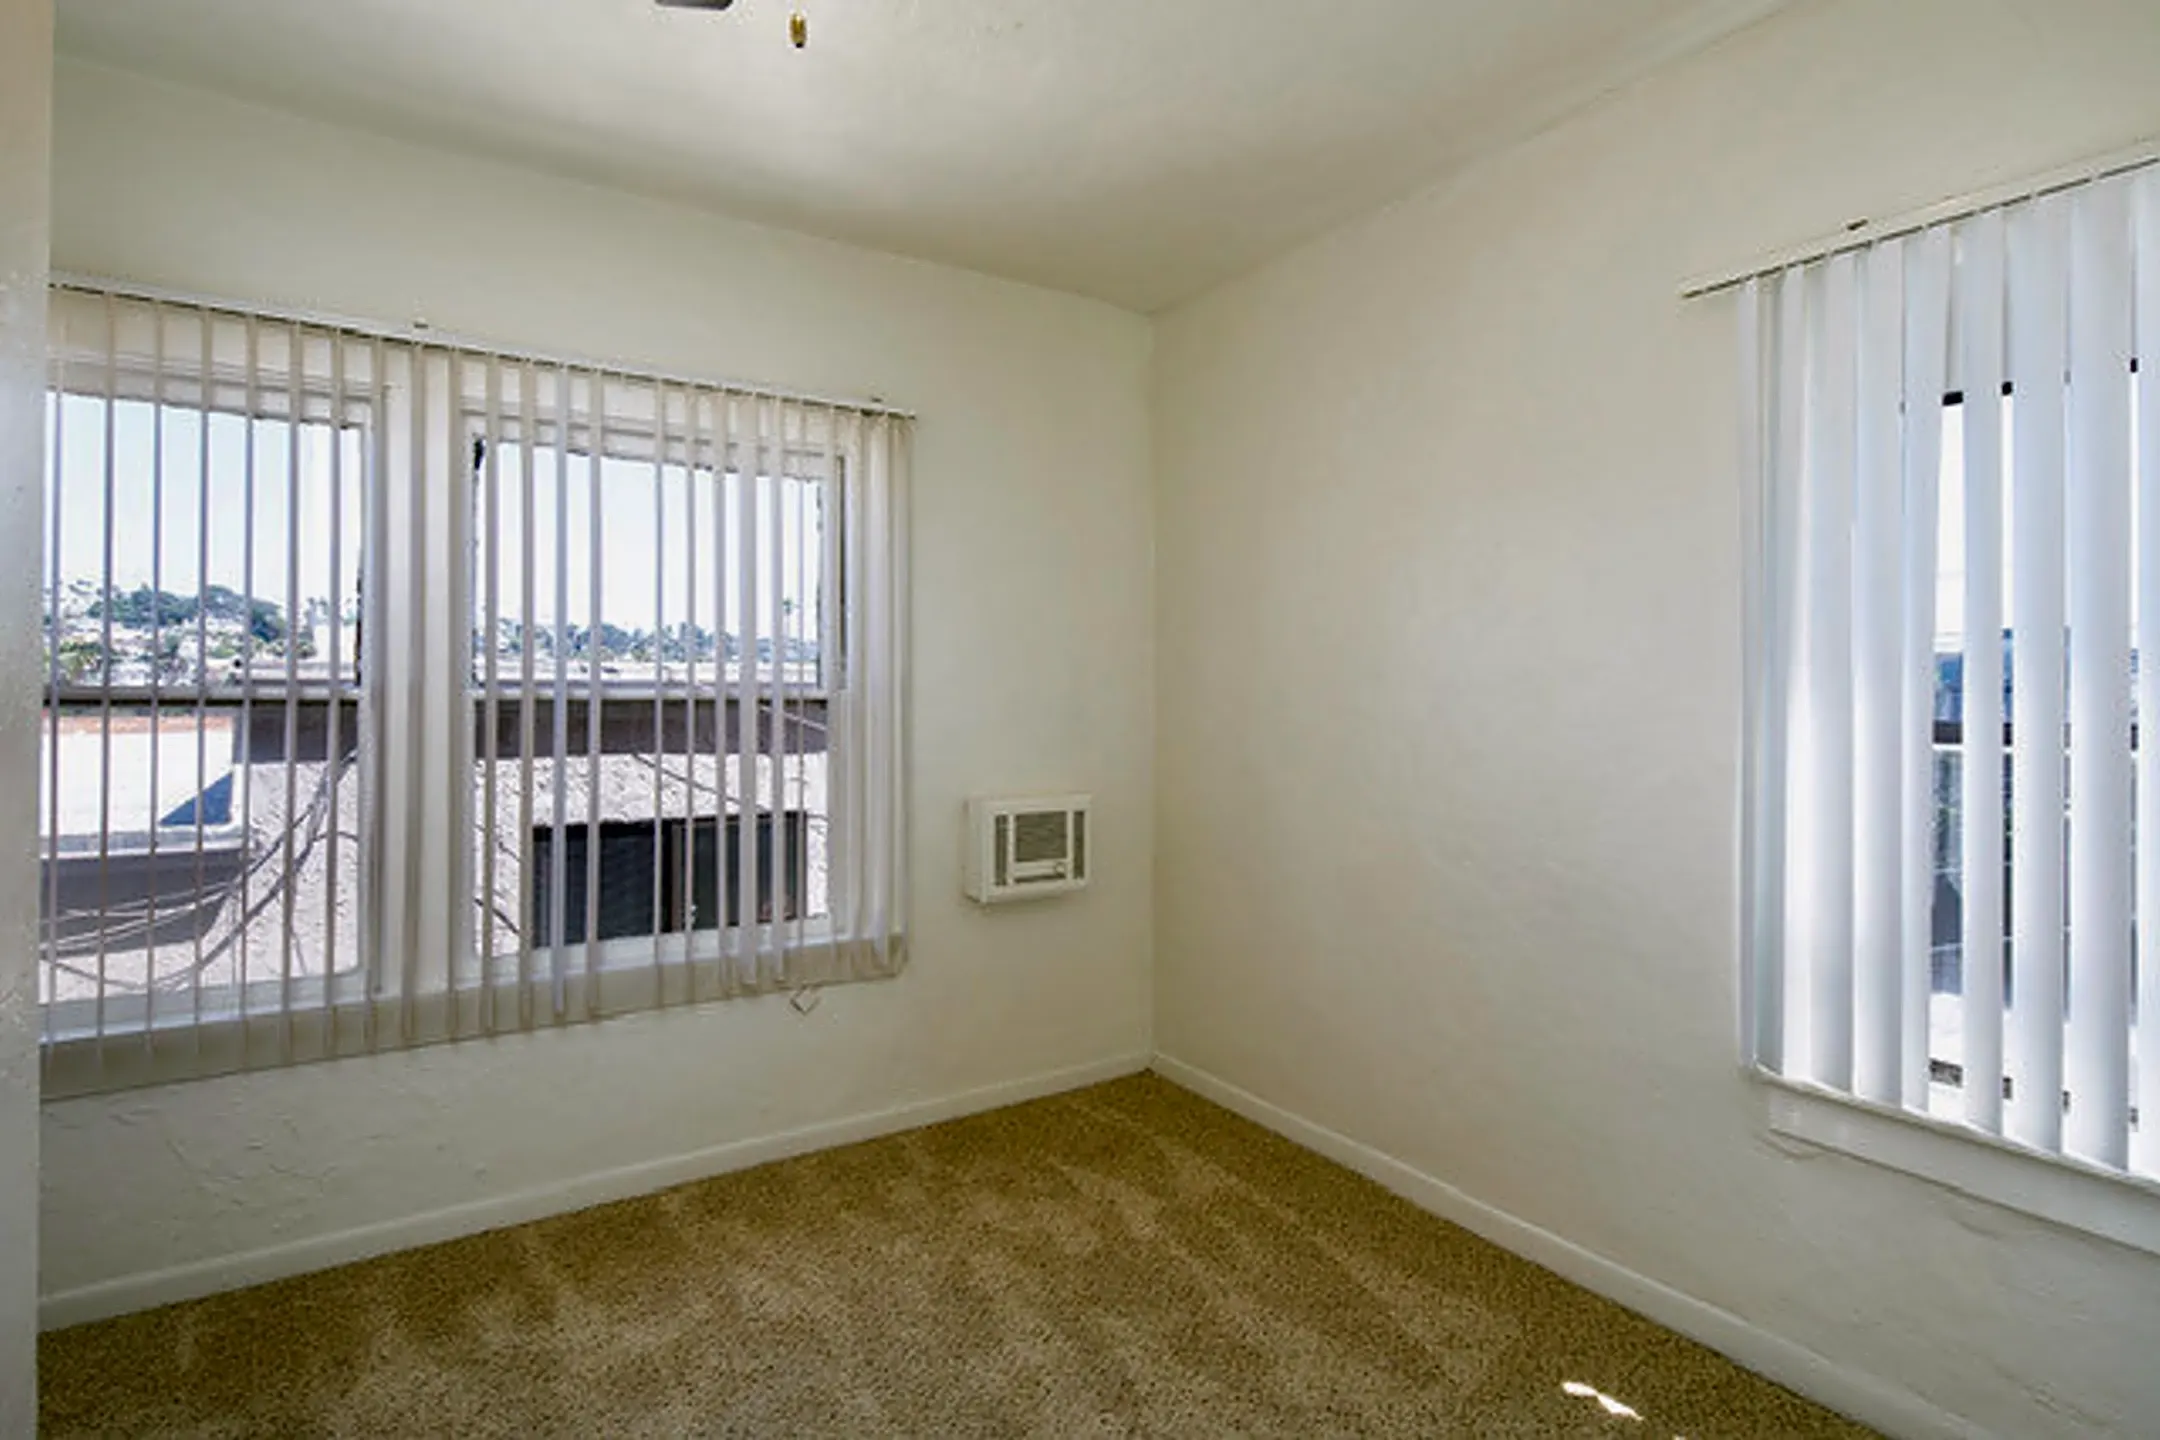 4925 Del Mar Avenue Unit 10 10 | San Diego, CA Apartments for Rent | Rent.